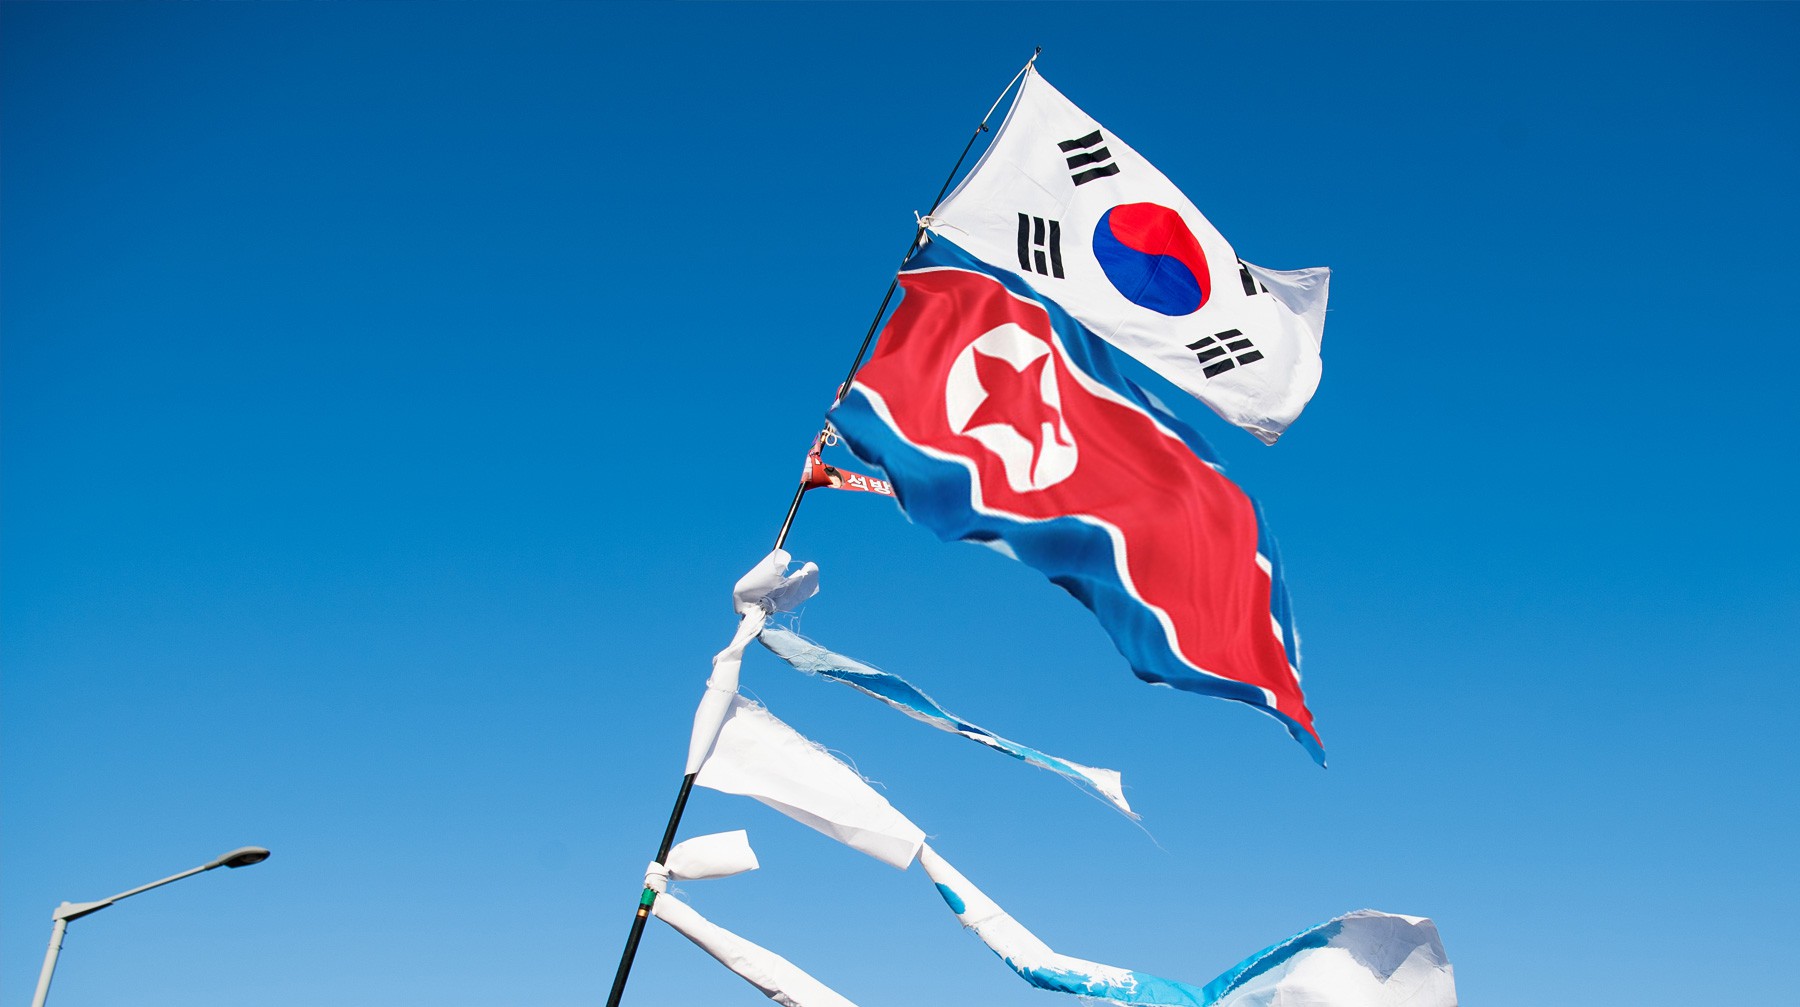 Dailystorm - КНДР и Южная Корея символически объединили железные дороги